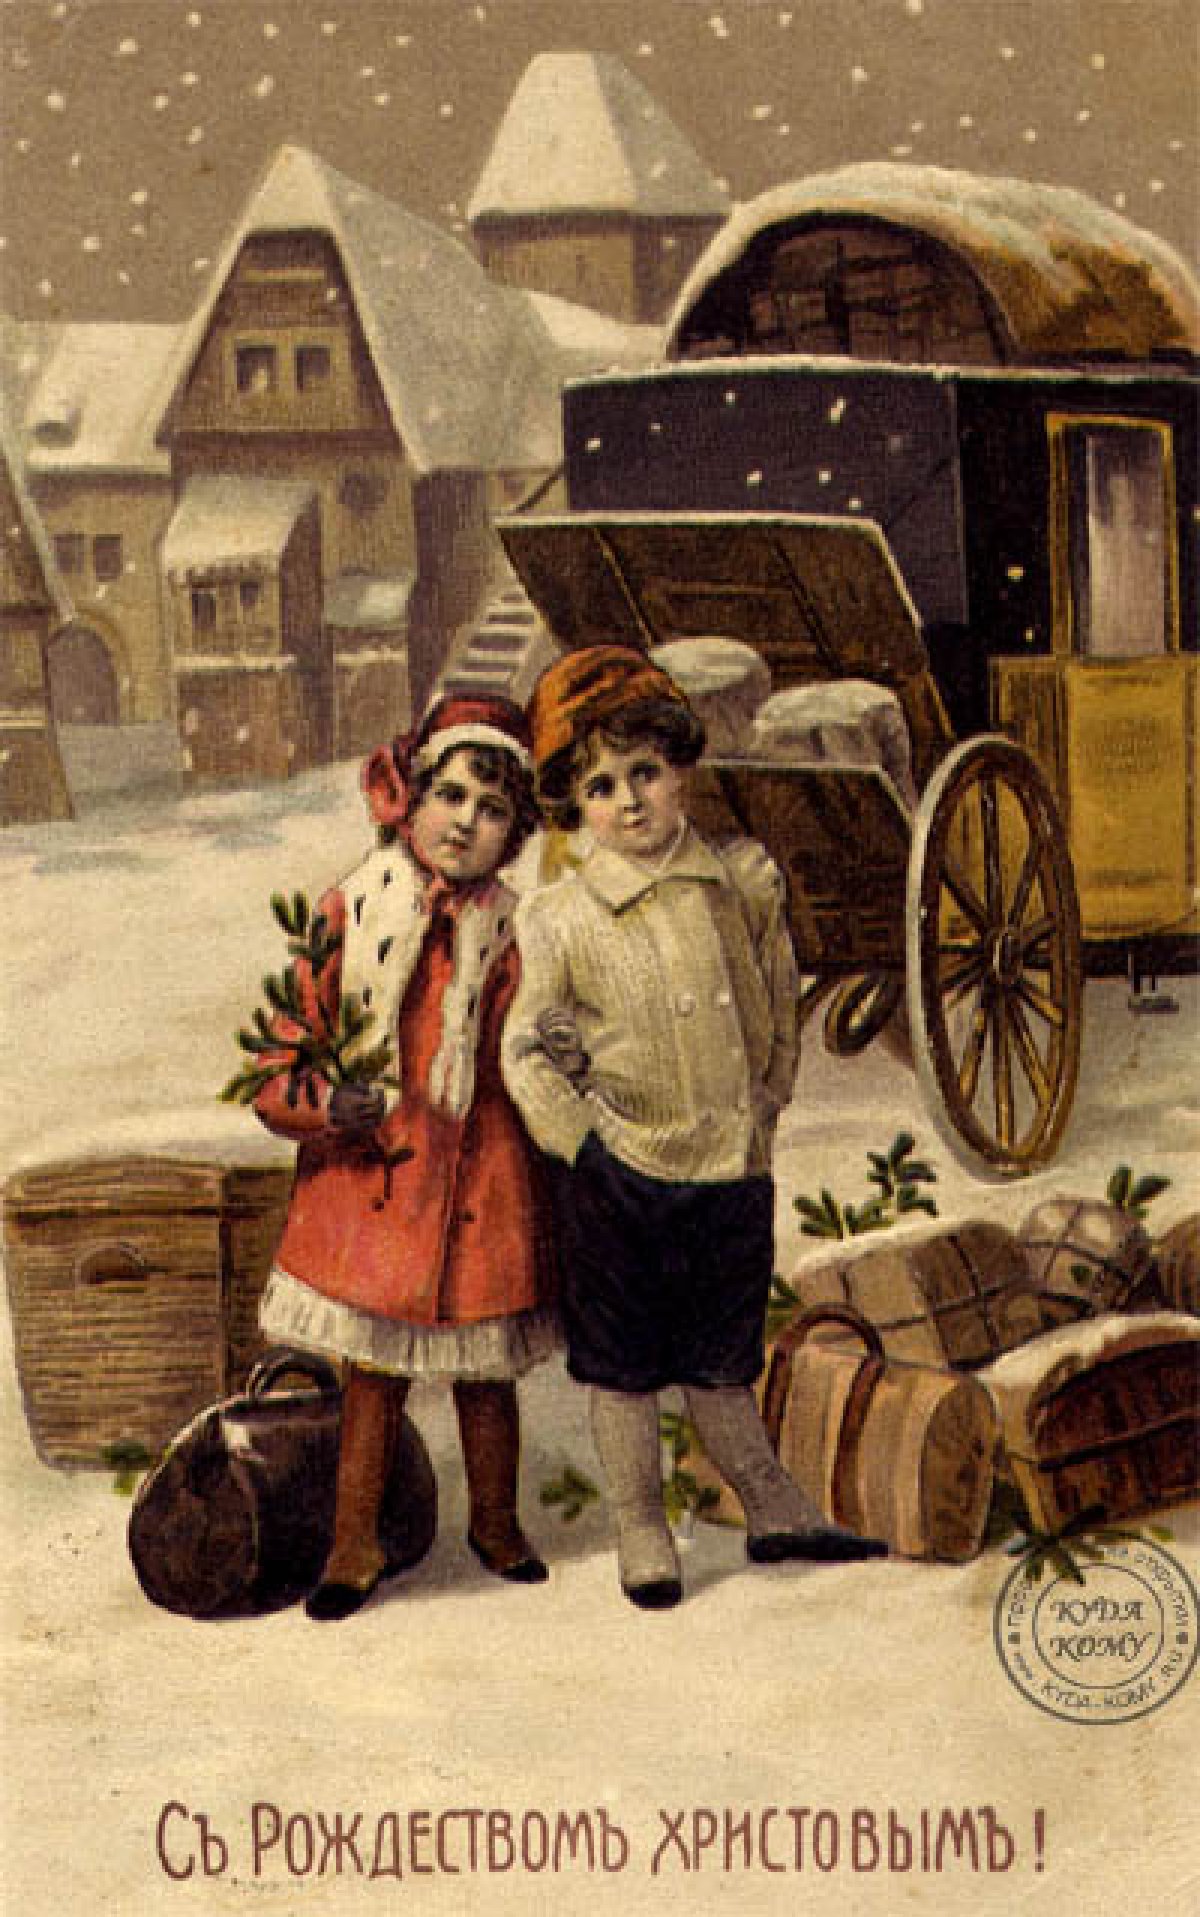 Подборка дореволюционных праздничных открыток для тех, кто хочет проникнуться атмосферой Рождества в российских традициях